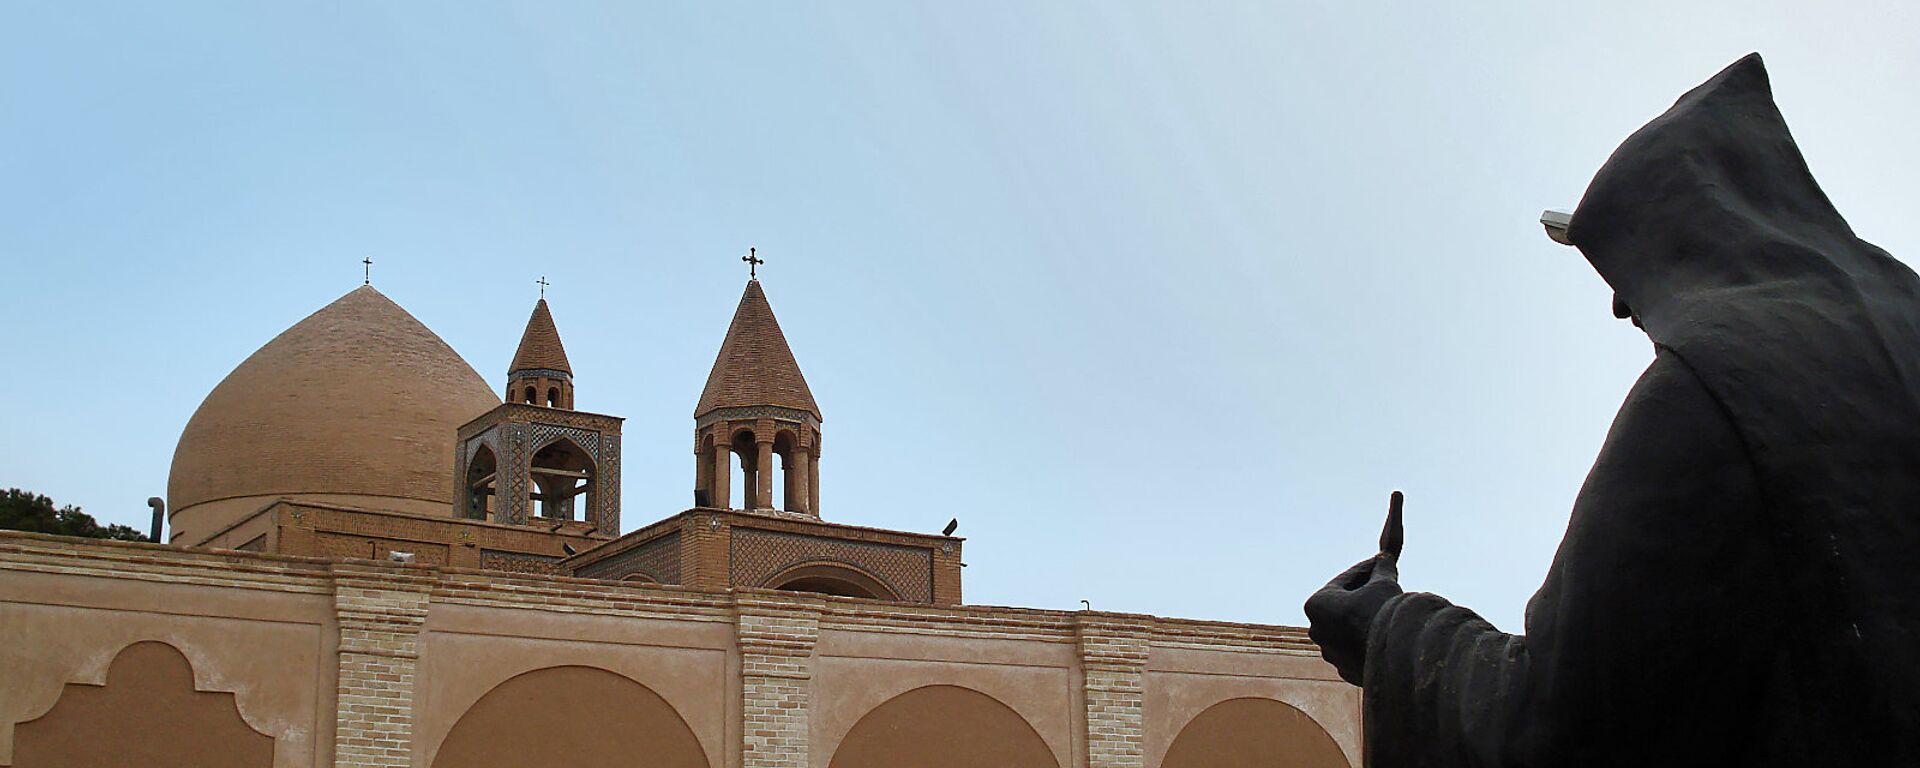 Главный храм армянской церкви в Иране, собор Св.Христа Всеспасителя, Исфахан - Sputnik Армения, 1920, 31.05.2018